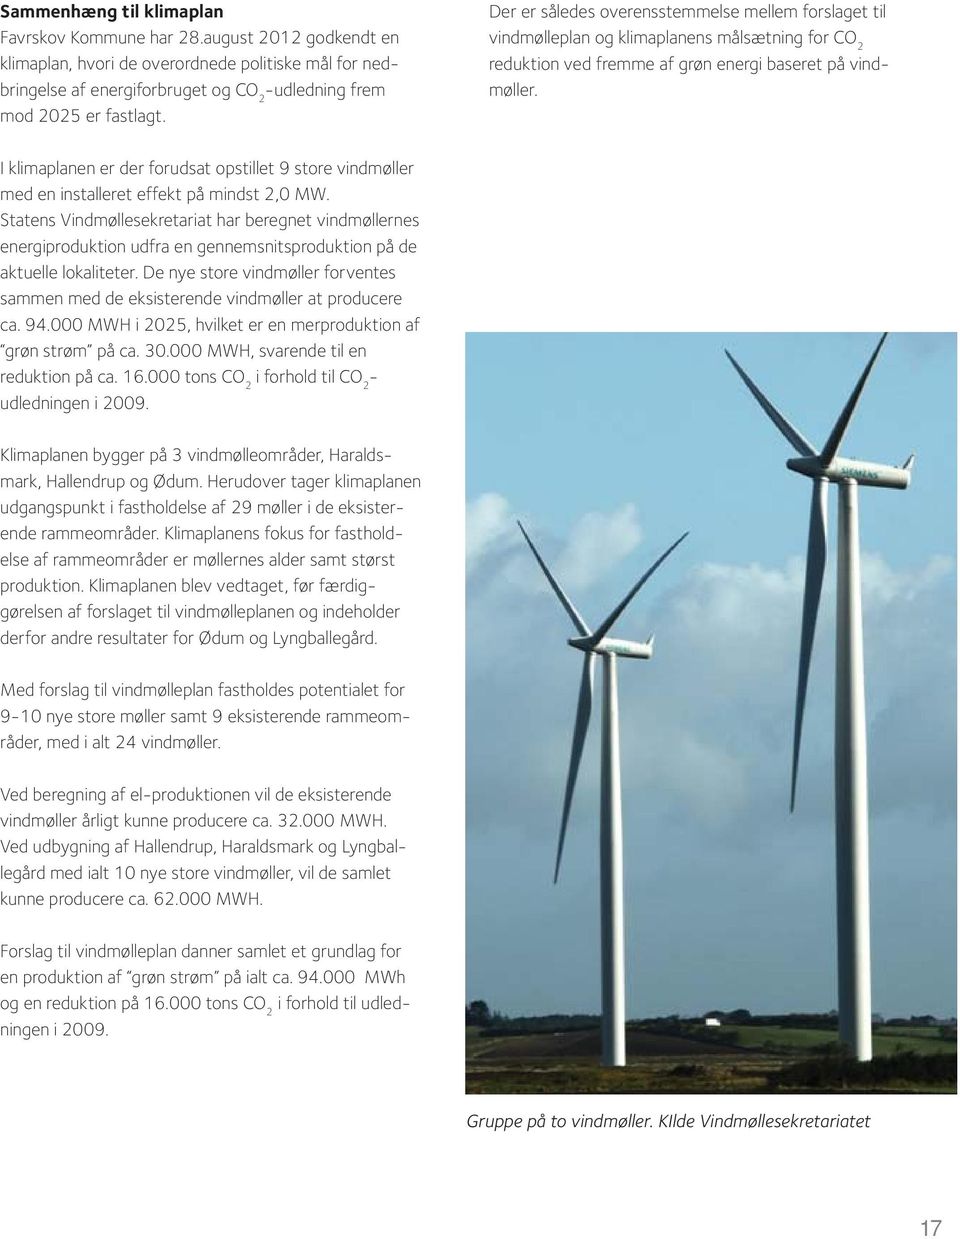 I klimaplanen er der forudsat opstillet 9 store vindmøller med en installeret effekt på mindst 2,0 MW.